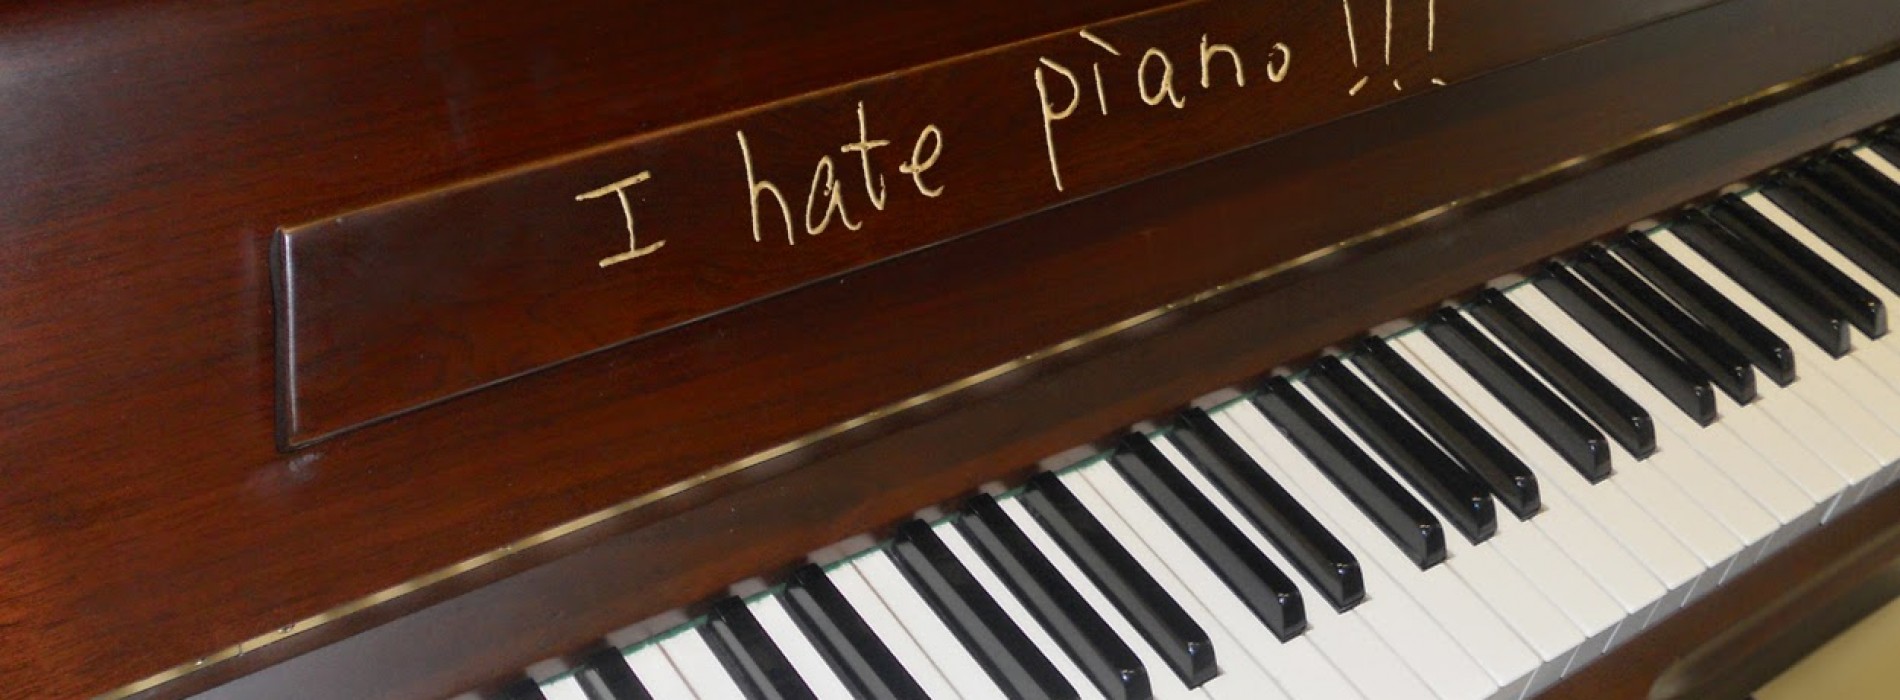 I Hate Piano!